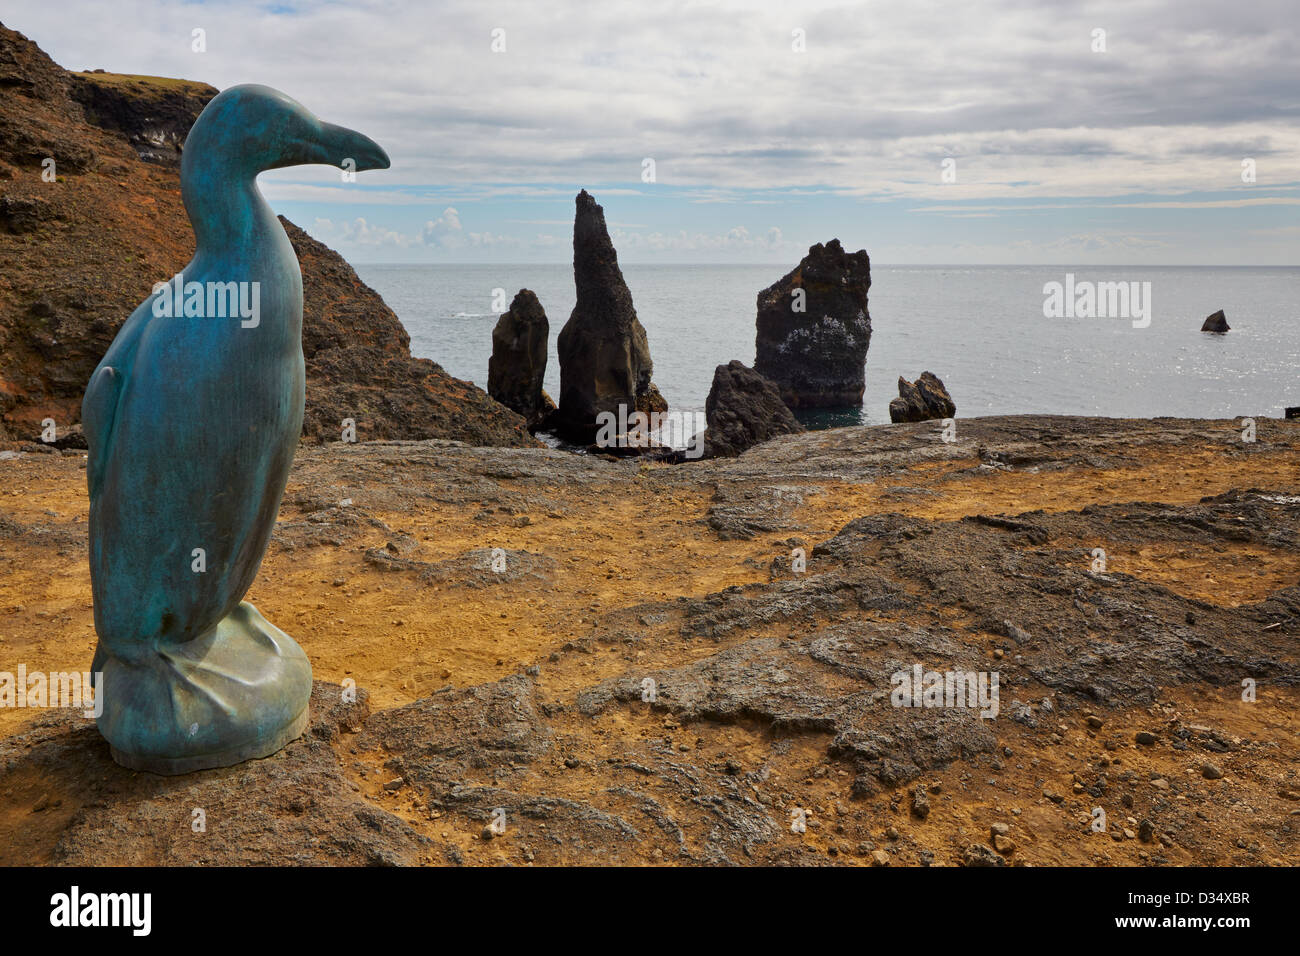 Great Auk Sculpture at Valahnukur coast, Iceland Stock Photo